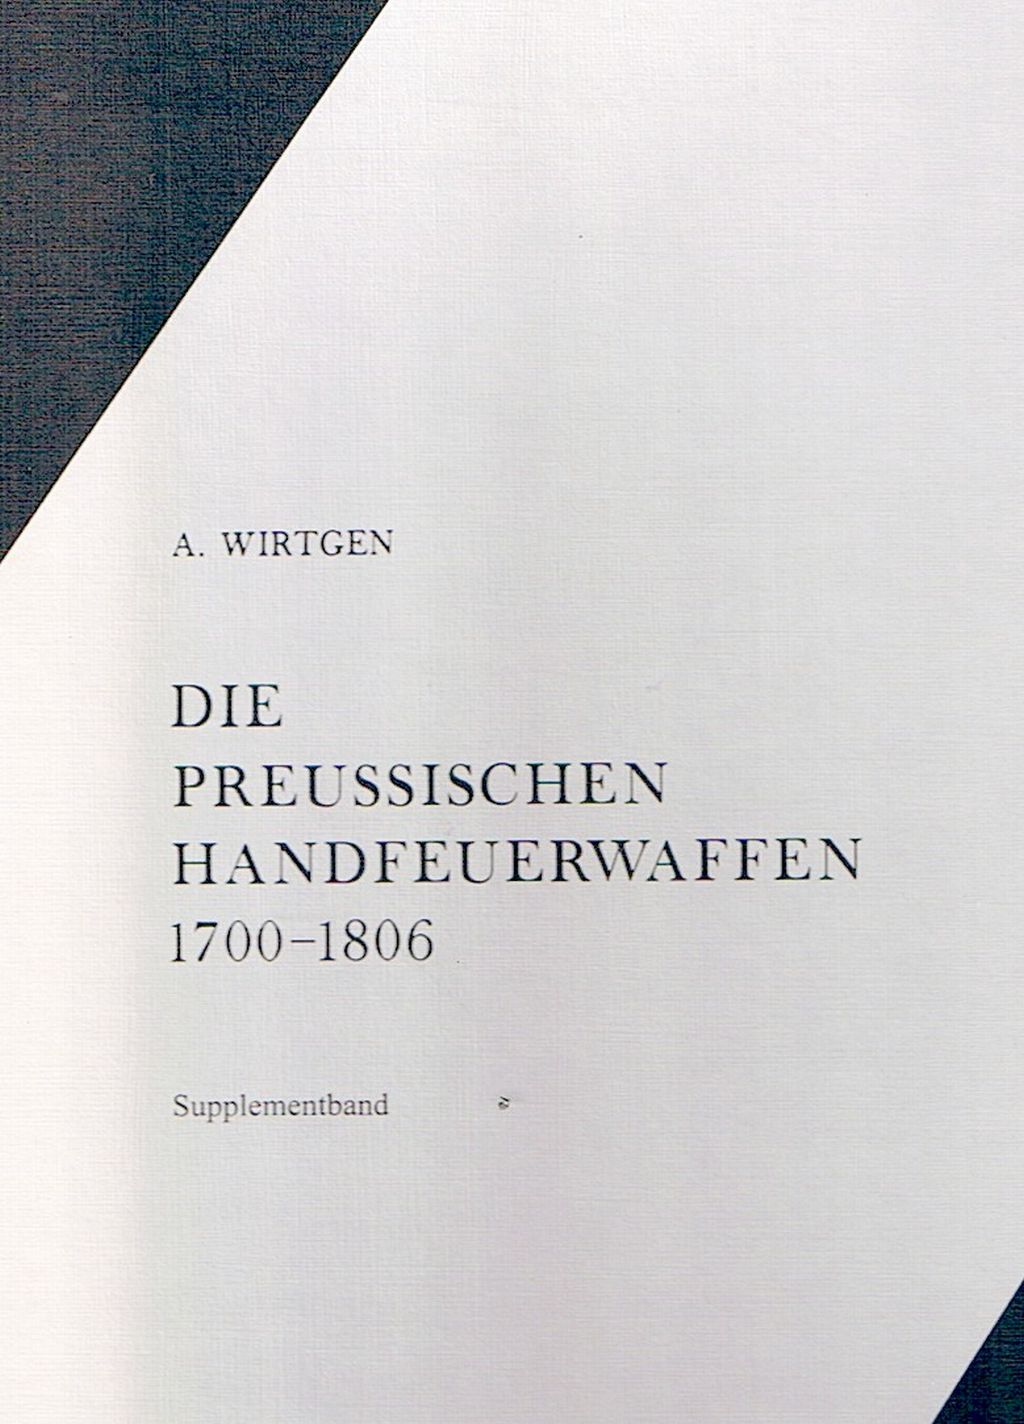 Arnold Wirtgen, Die preußischen Handfeuerwaffen 1700-1806, Supplementband